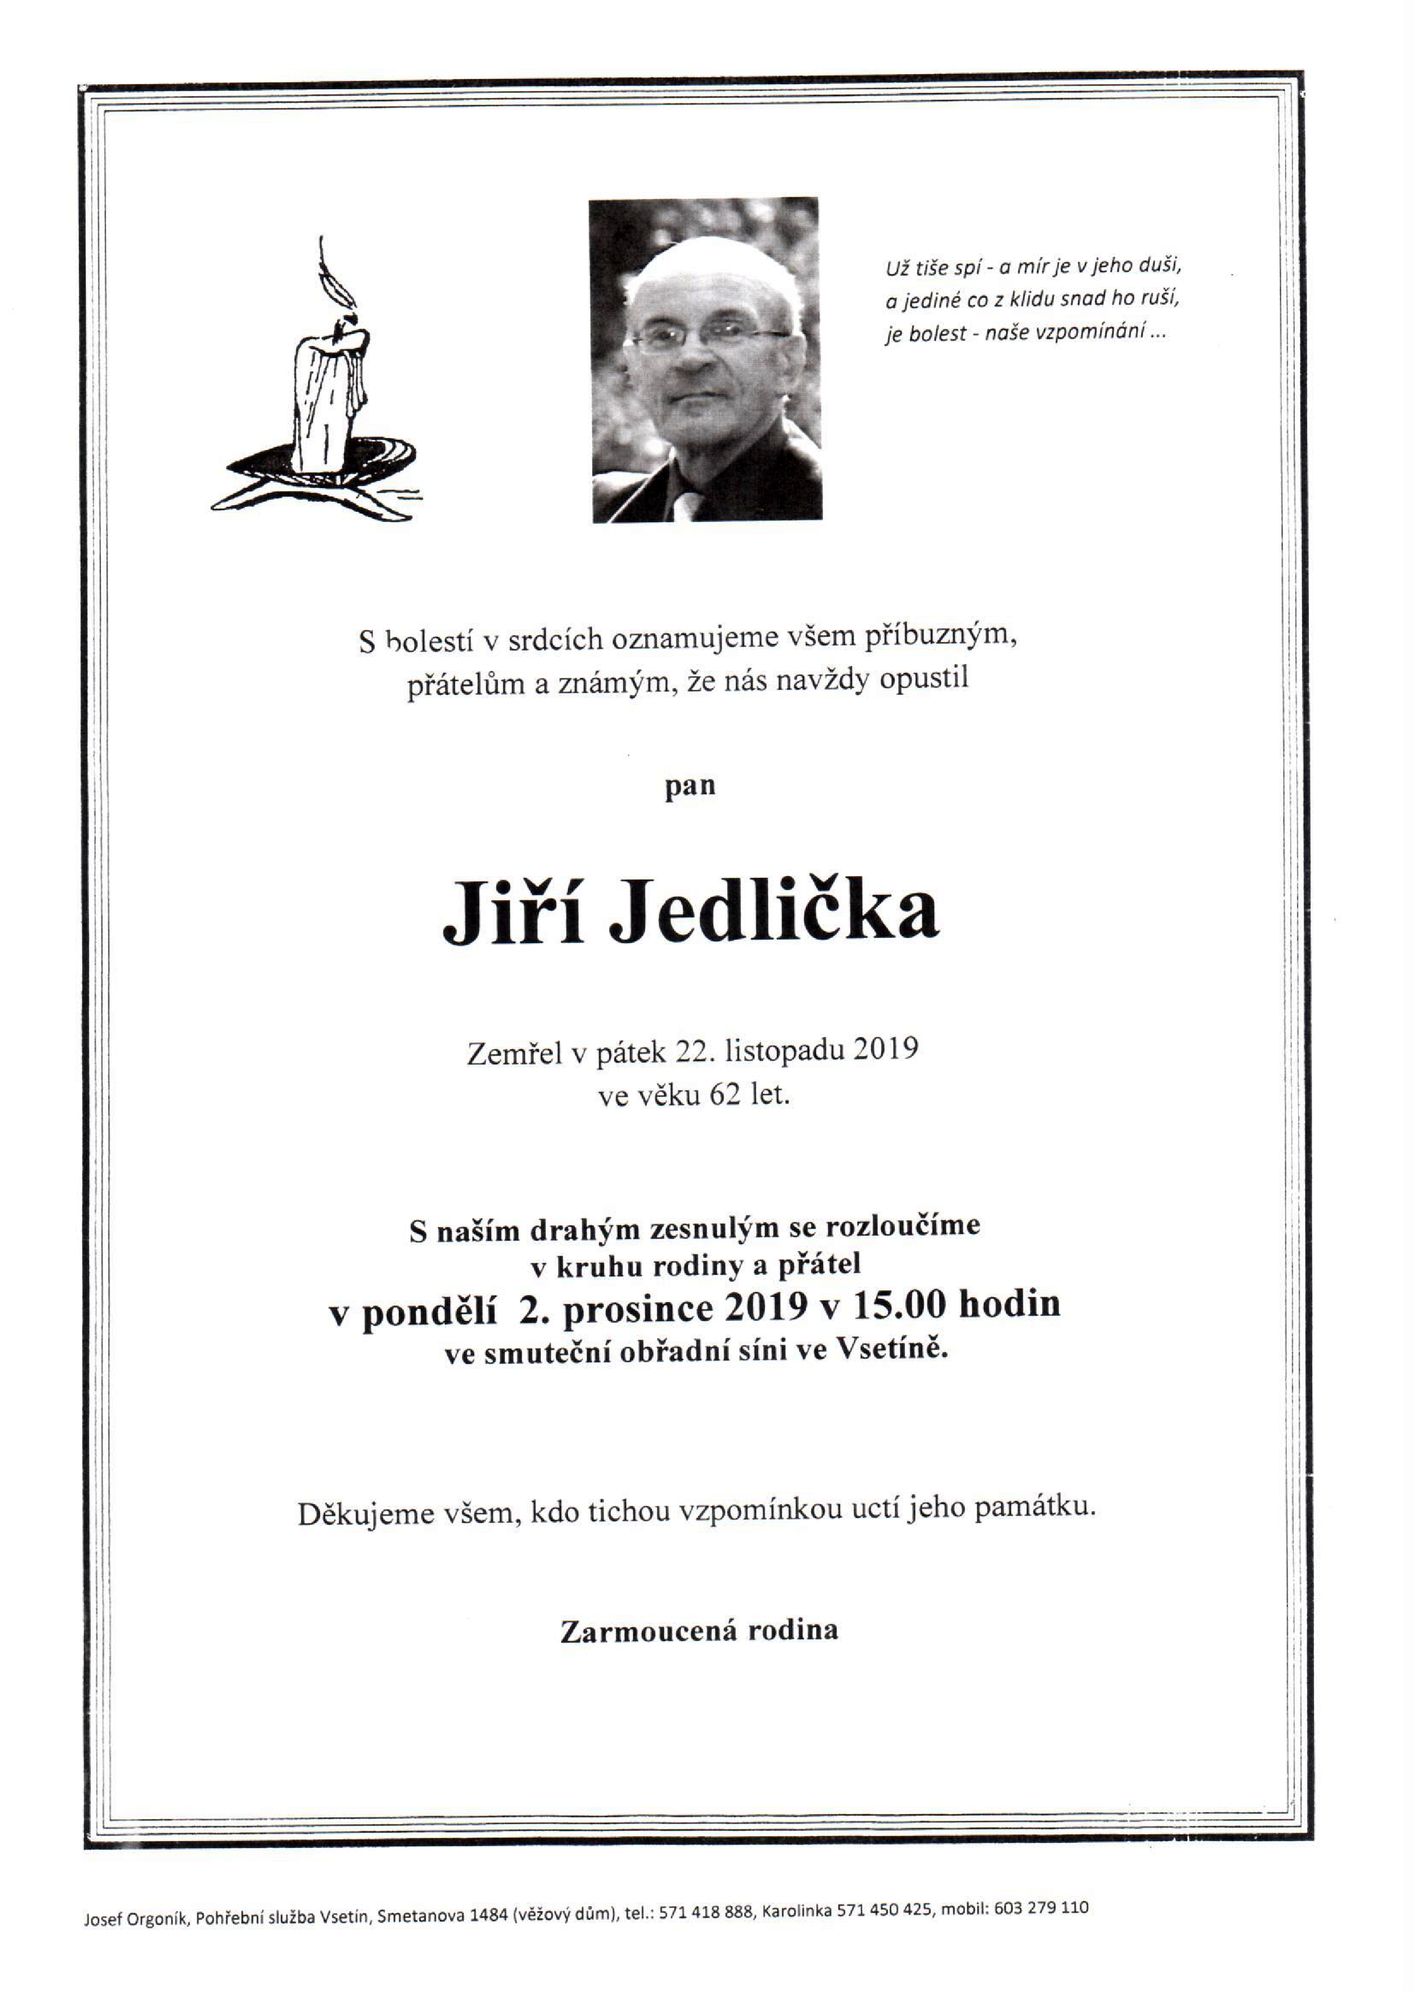 Jiří Jedlička